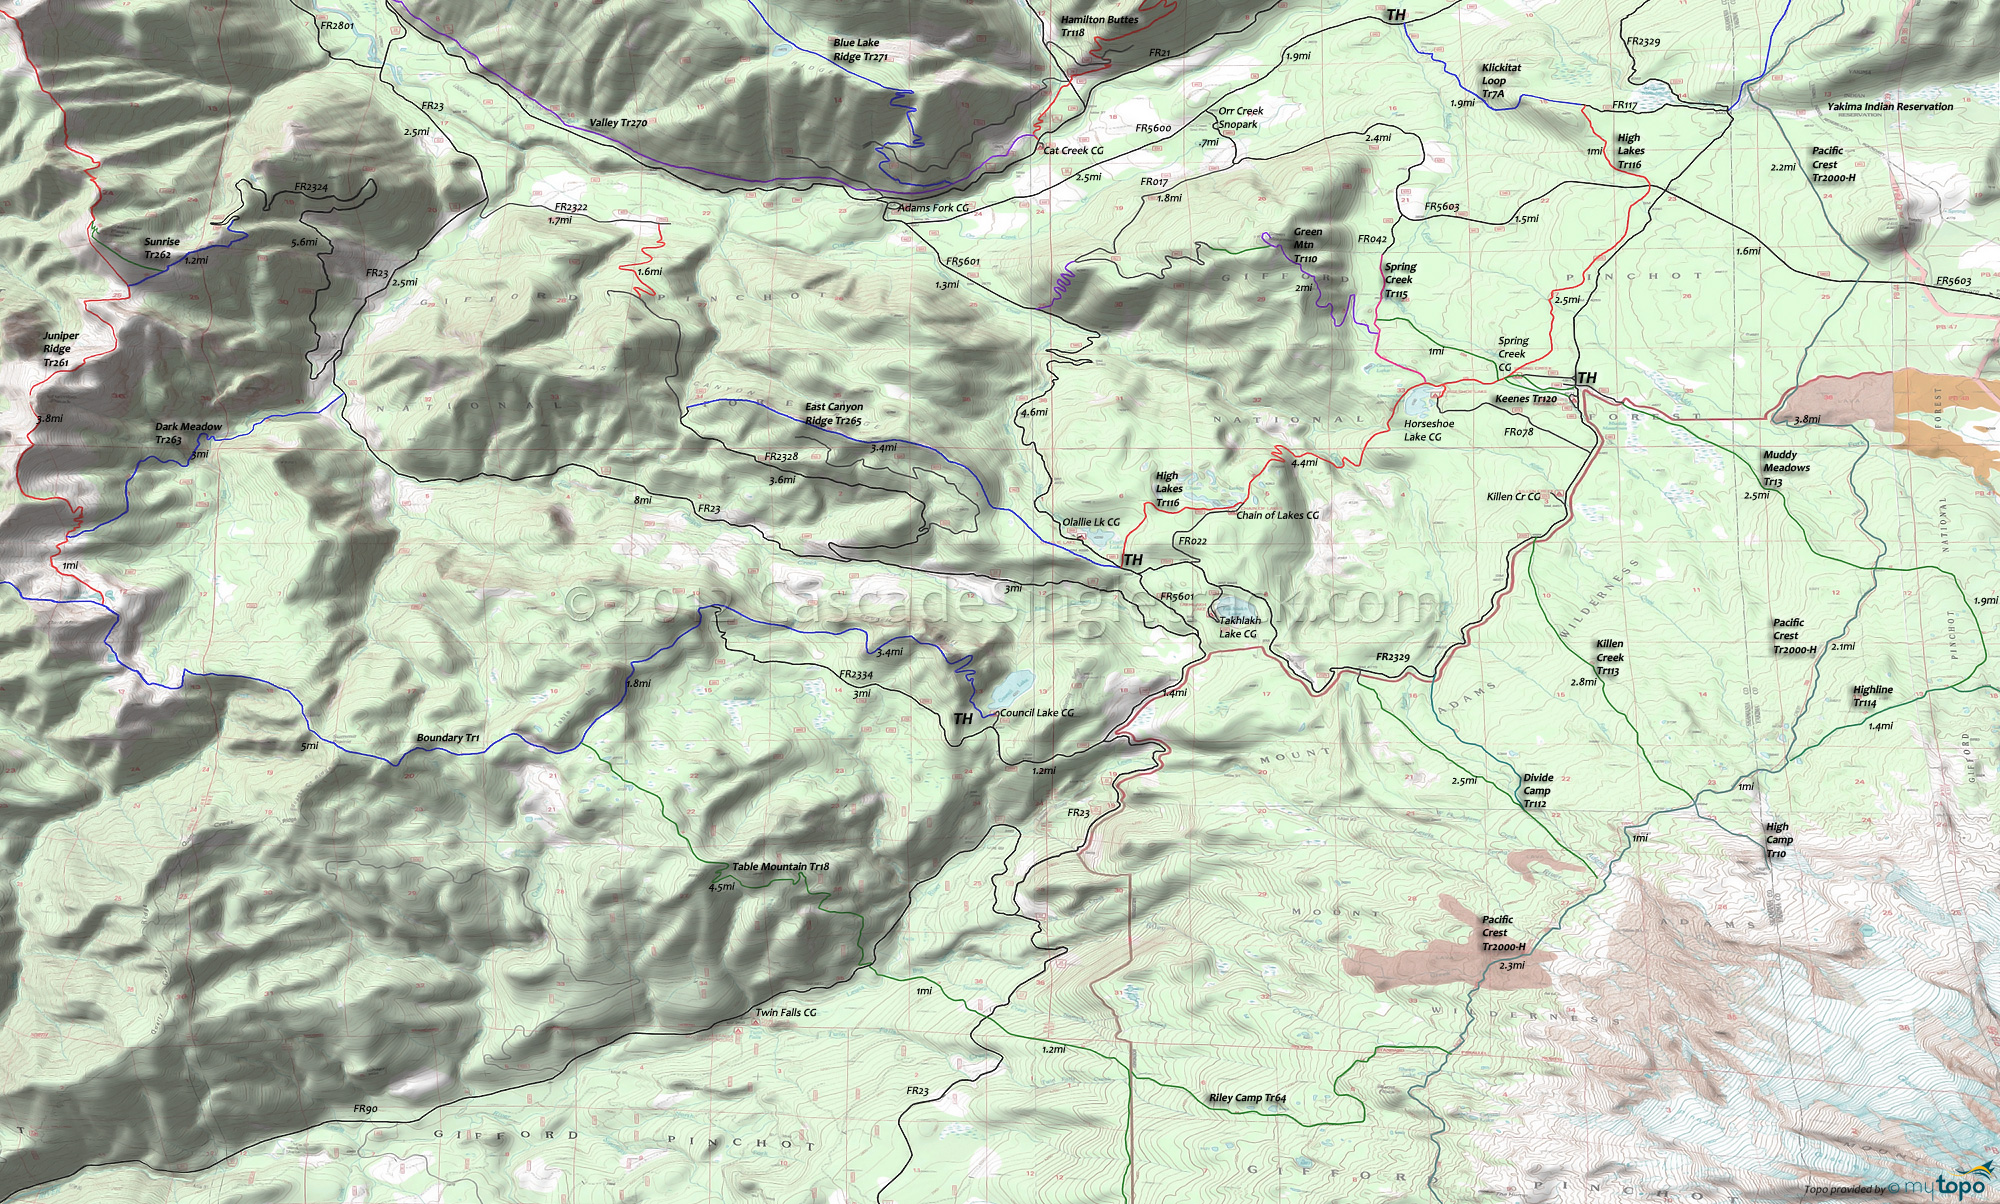 Divide Camp Trail 112, East Canyon Ridge Trail 265, Green Mountain Trail 110, High Lakes Trail 116, Keenes Trail 120, Killen Creek Trail 113, Muddy Meadows Trail 13, Pacific Crest Trail 2000-H, Spring Creek Trail 115 Area Topo Map